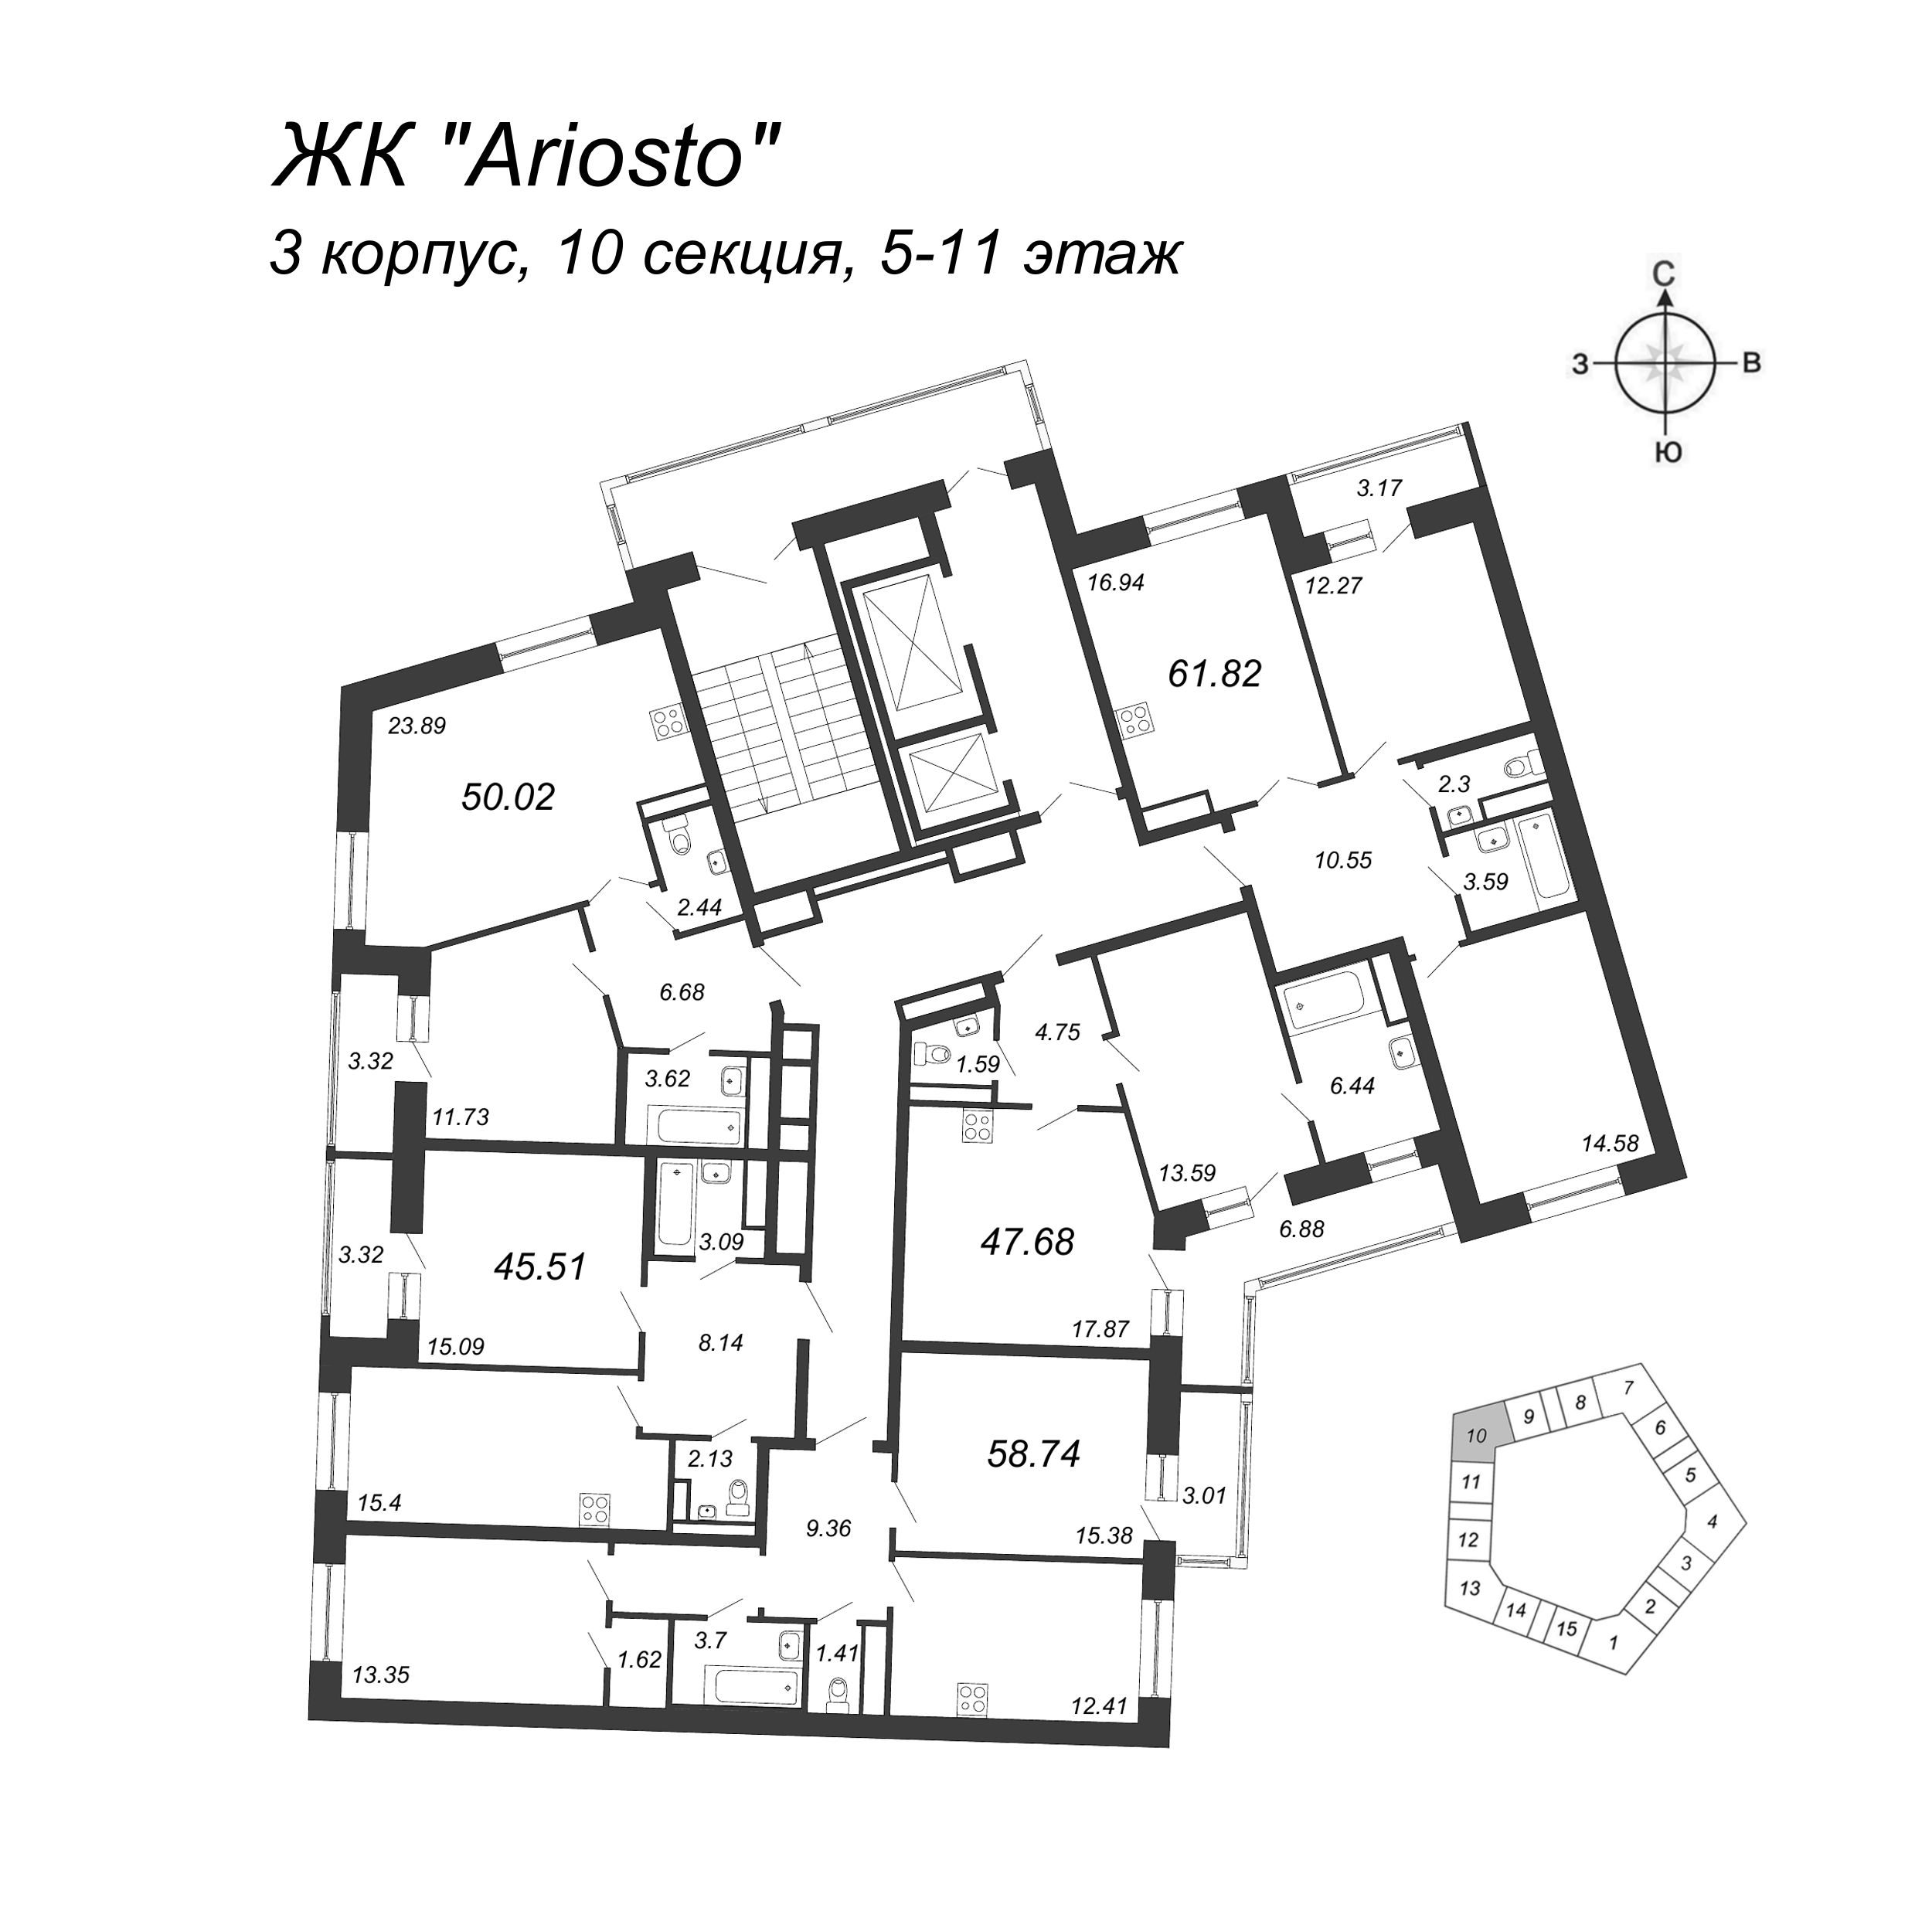 3-комнатная (Евро) квартира, 61.82 м² в ЖК "Ariosto" - планировка этажа